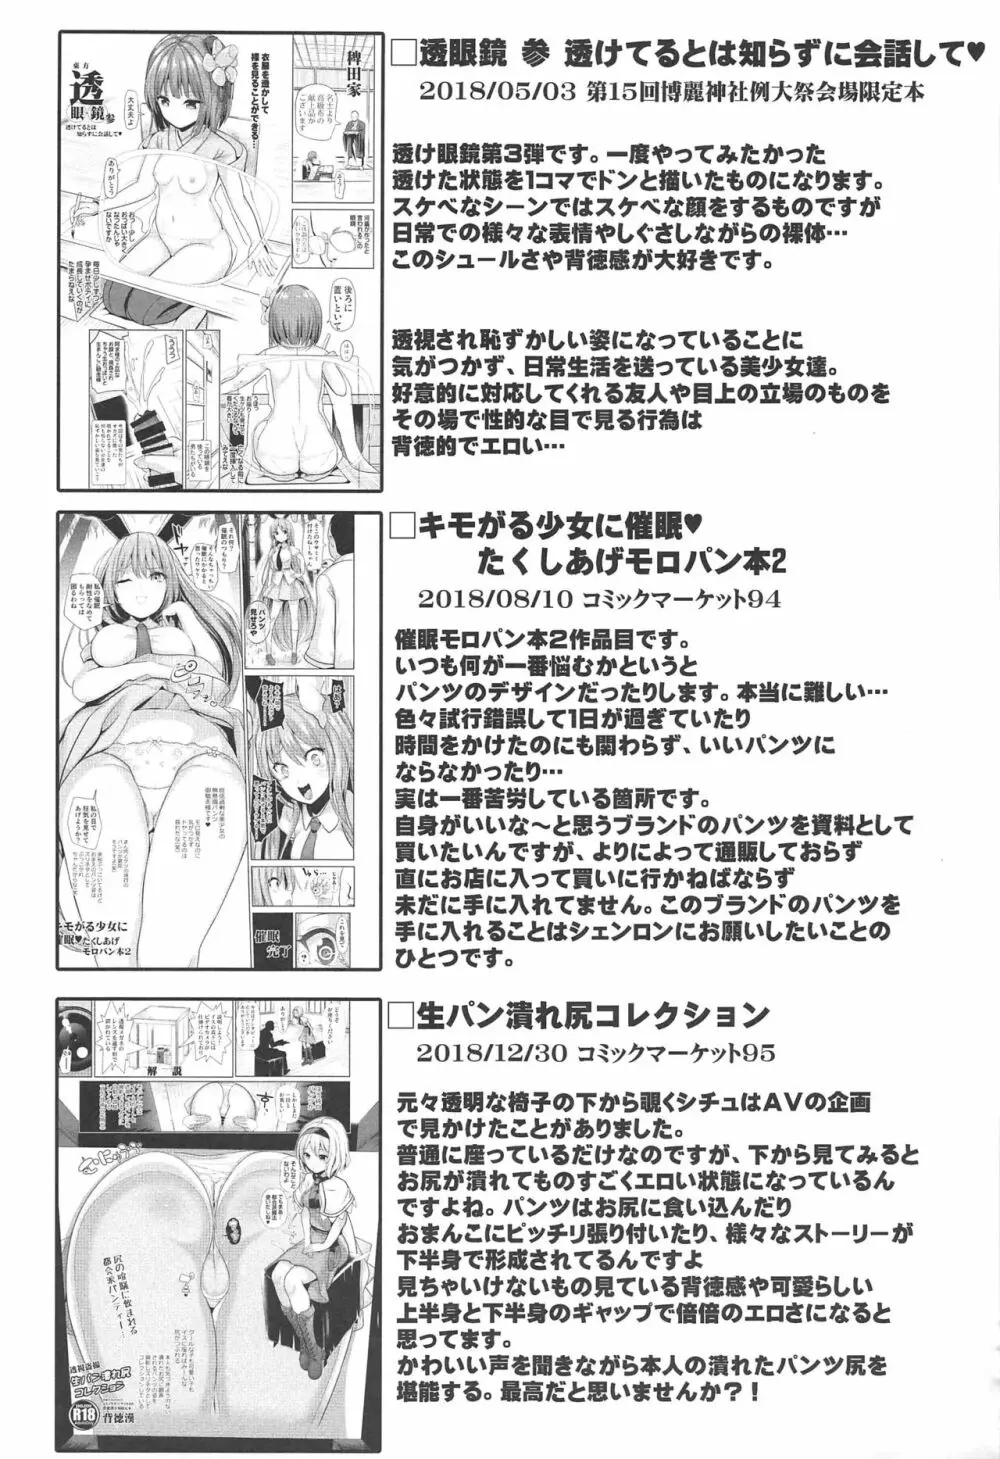 特殊シチュ短編総集編 東方シコるッ! 2 - page84